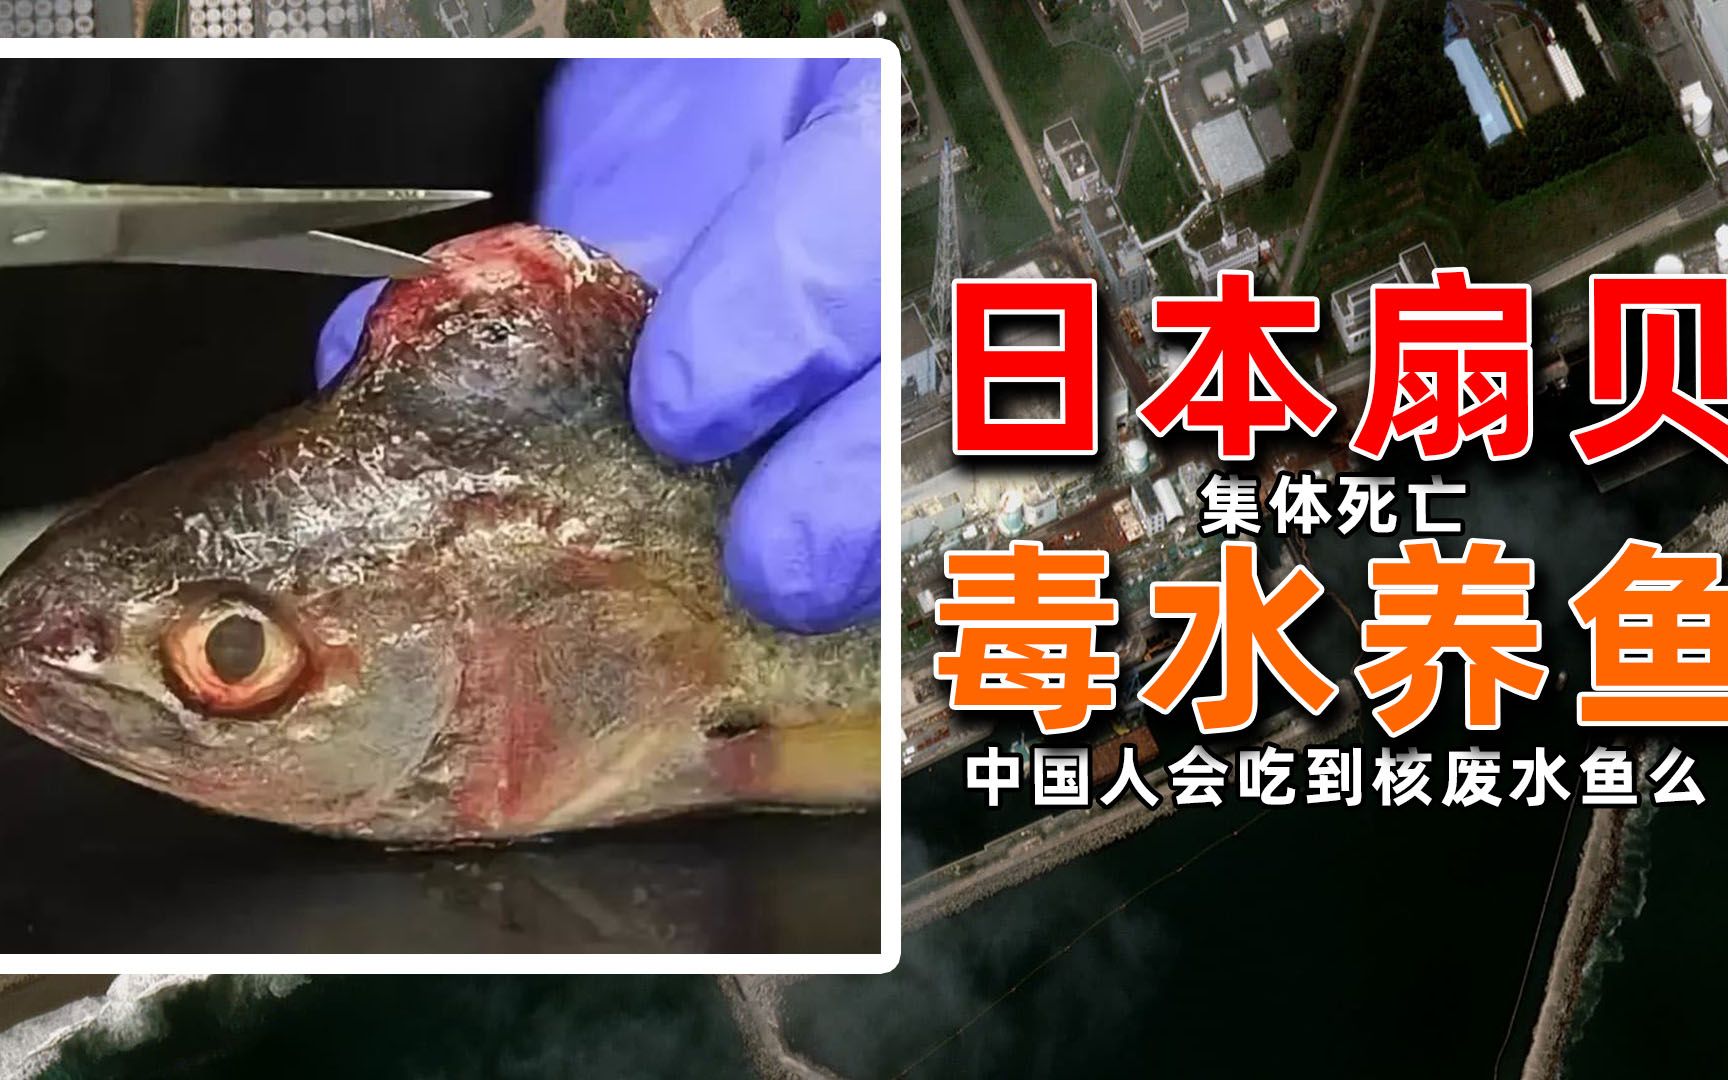 日本已经开始用核废水养鱼了！你以后还敢吃海鲜吗？